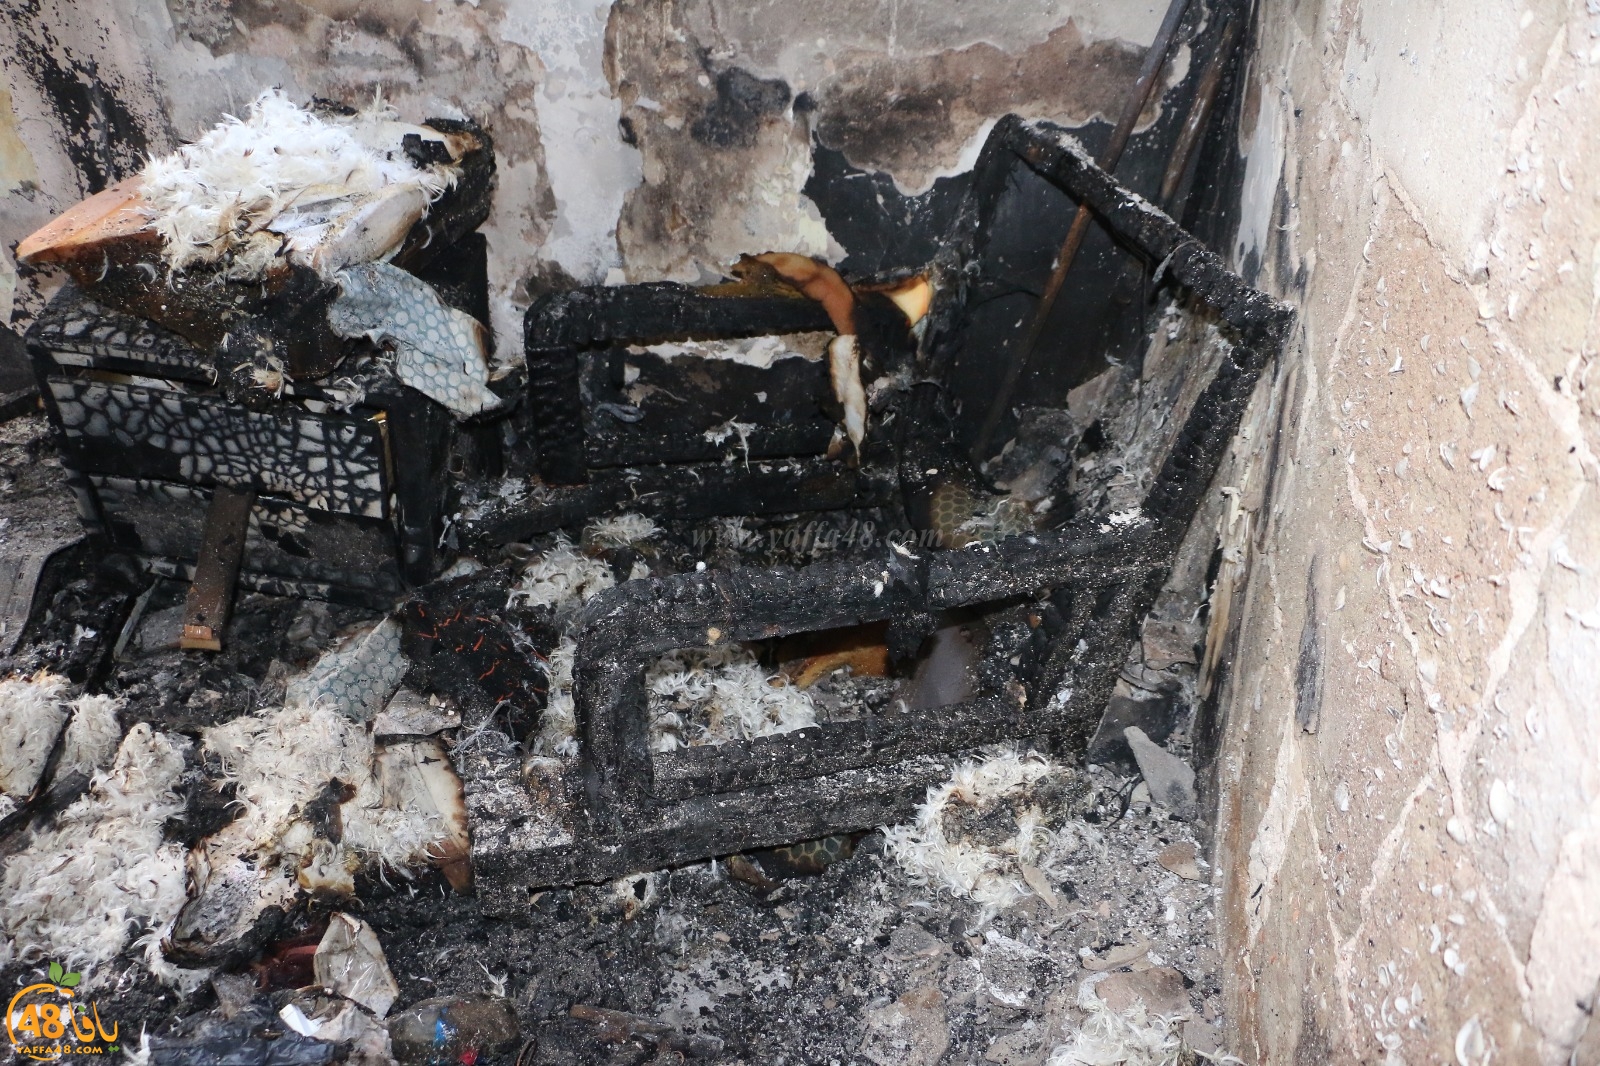  يافا: اجبروا الخواطر وساهموا في ترميم 3 بيوت متضررة من الحريق